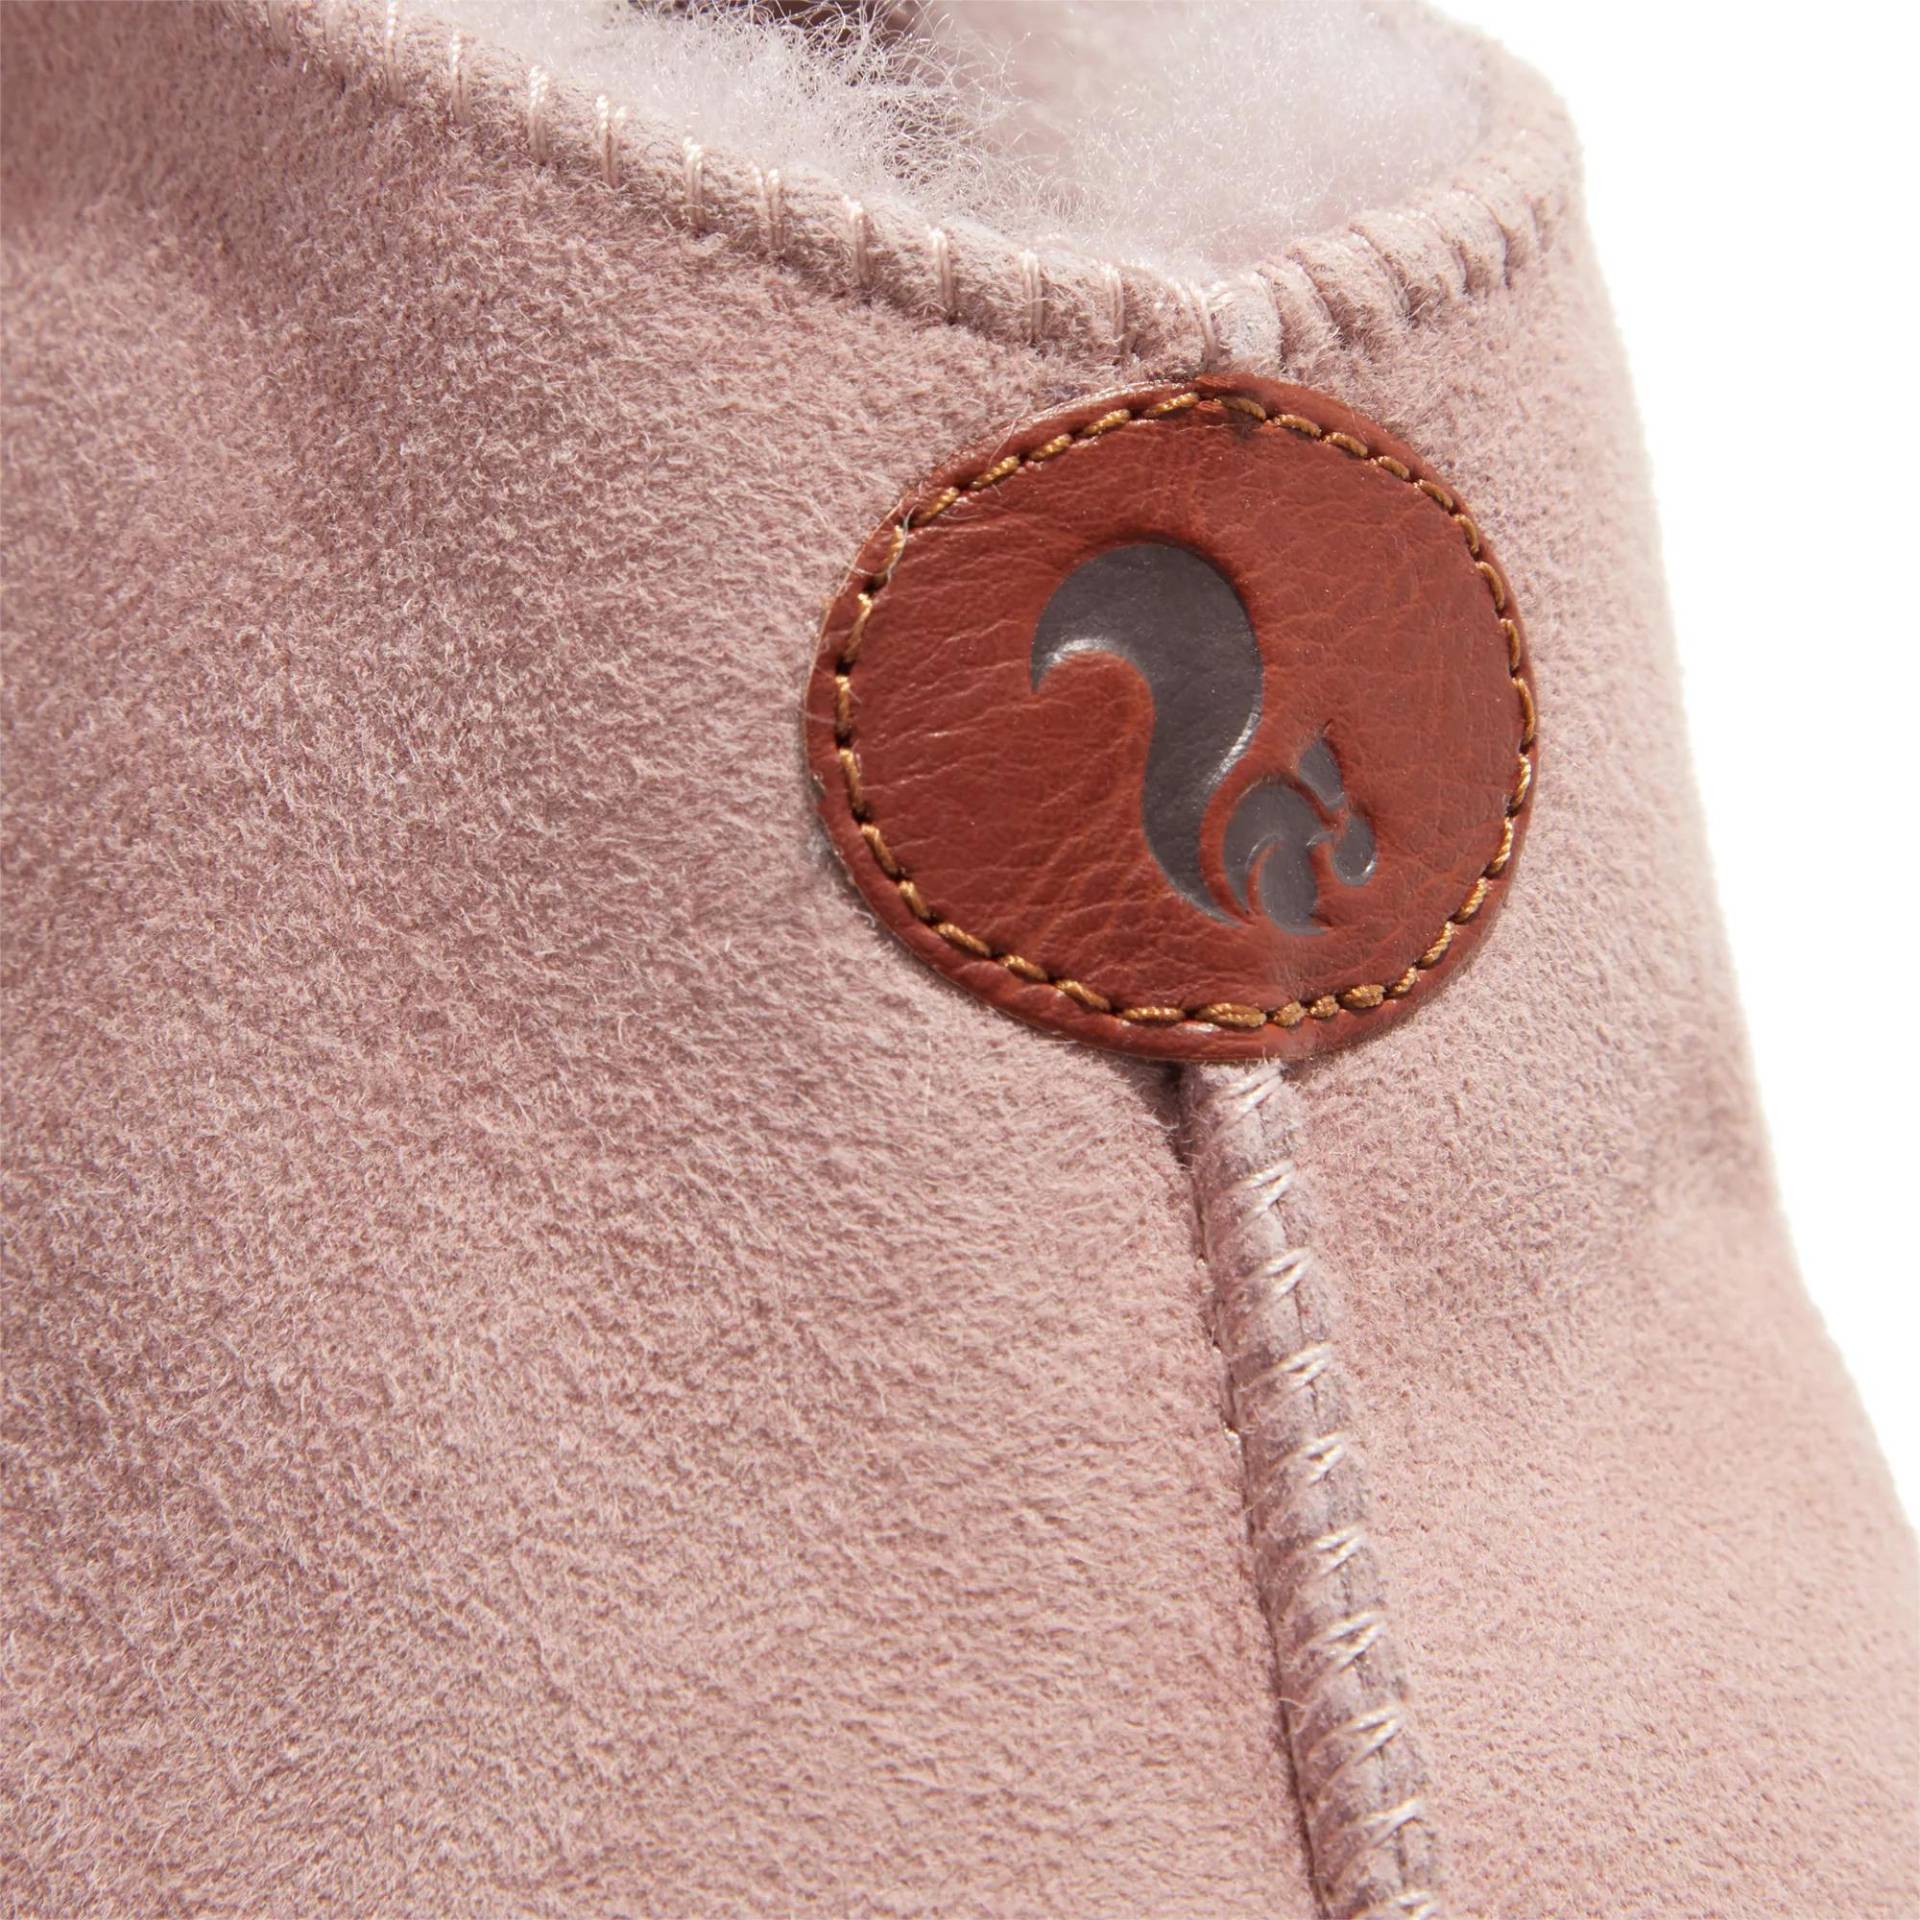 thies Sneakers - thies 1856 ® Sheep Slipper Boot new pink (W) - Gr. 39 (EU) - in Gold - für Damen von thies